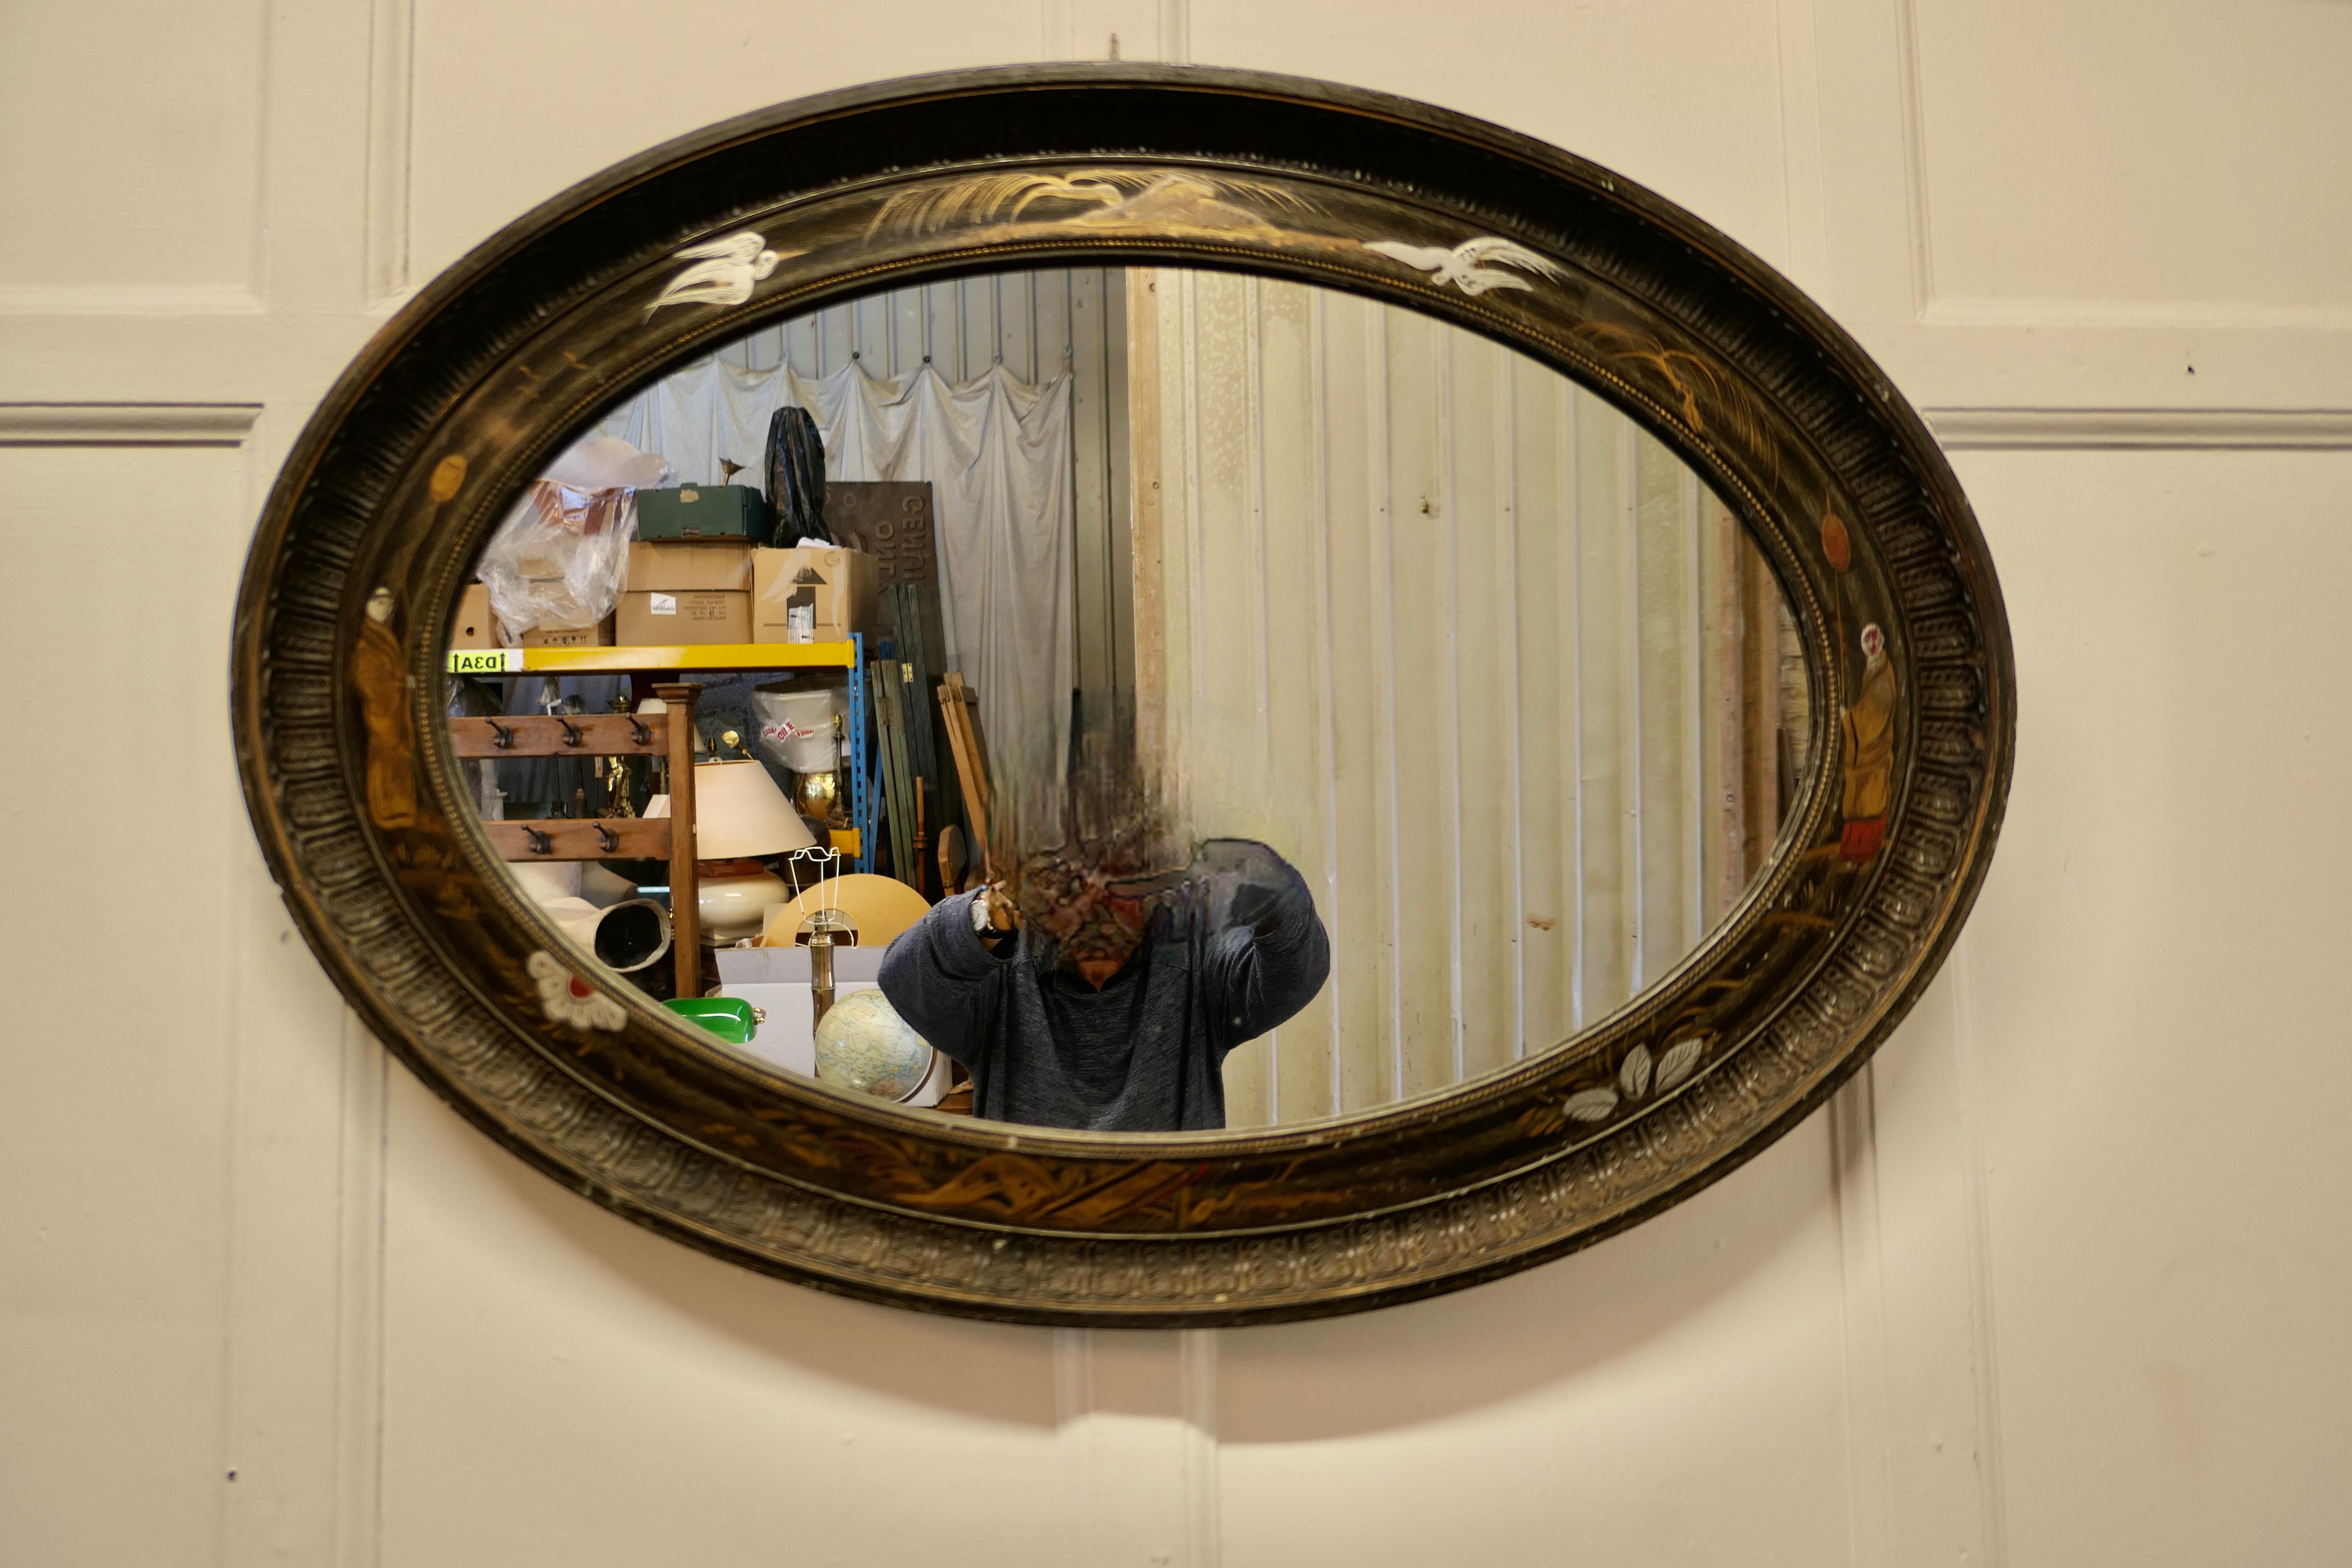 Miroir mural ovale sculpté en laque noire style chinoiseries 

Ce miroir de forme ovale présente un ravissant décor sculpté et peint de style chinois, avec des grues et des pêcheurs qui décorent le miroir.  fond sombre 
Le miroir est en bon état.
Il